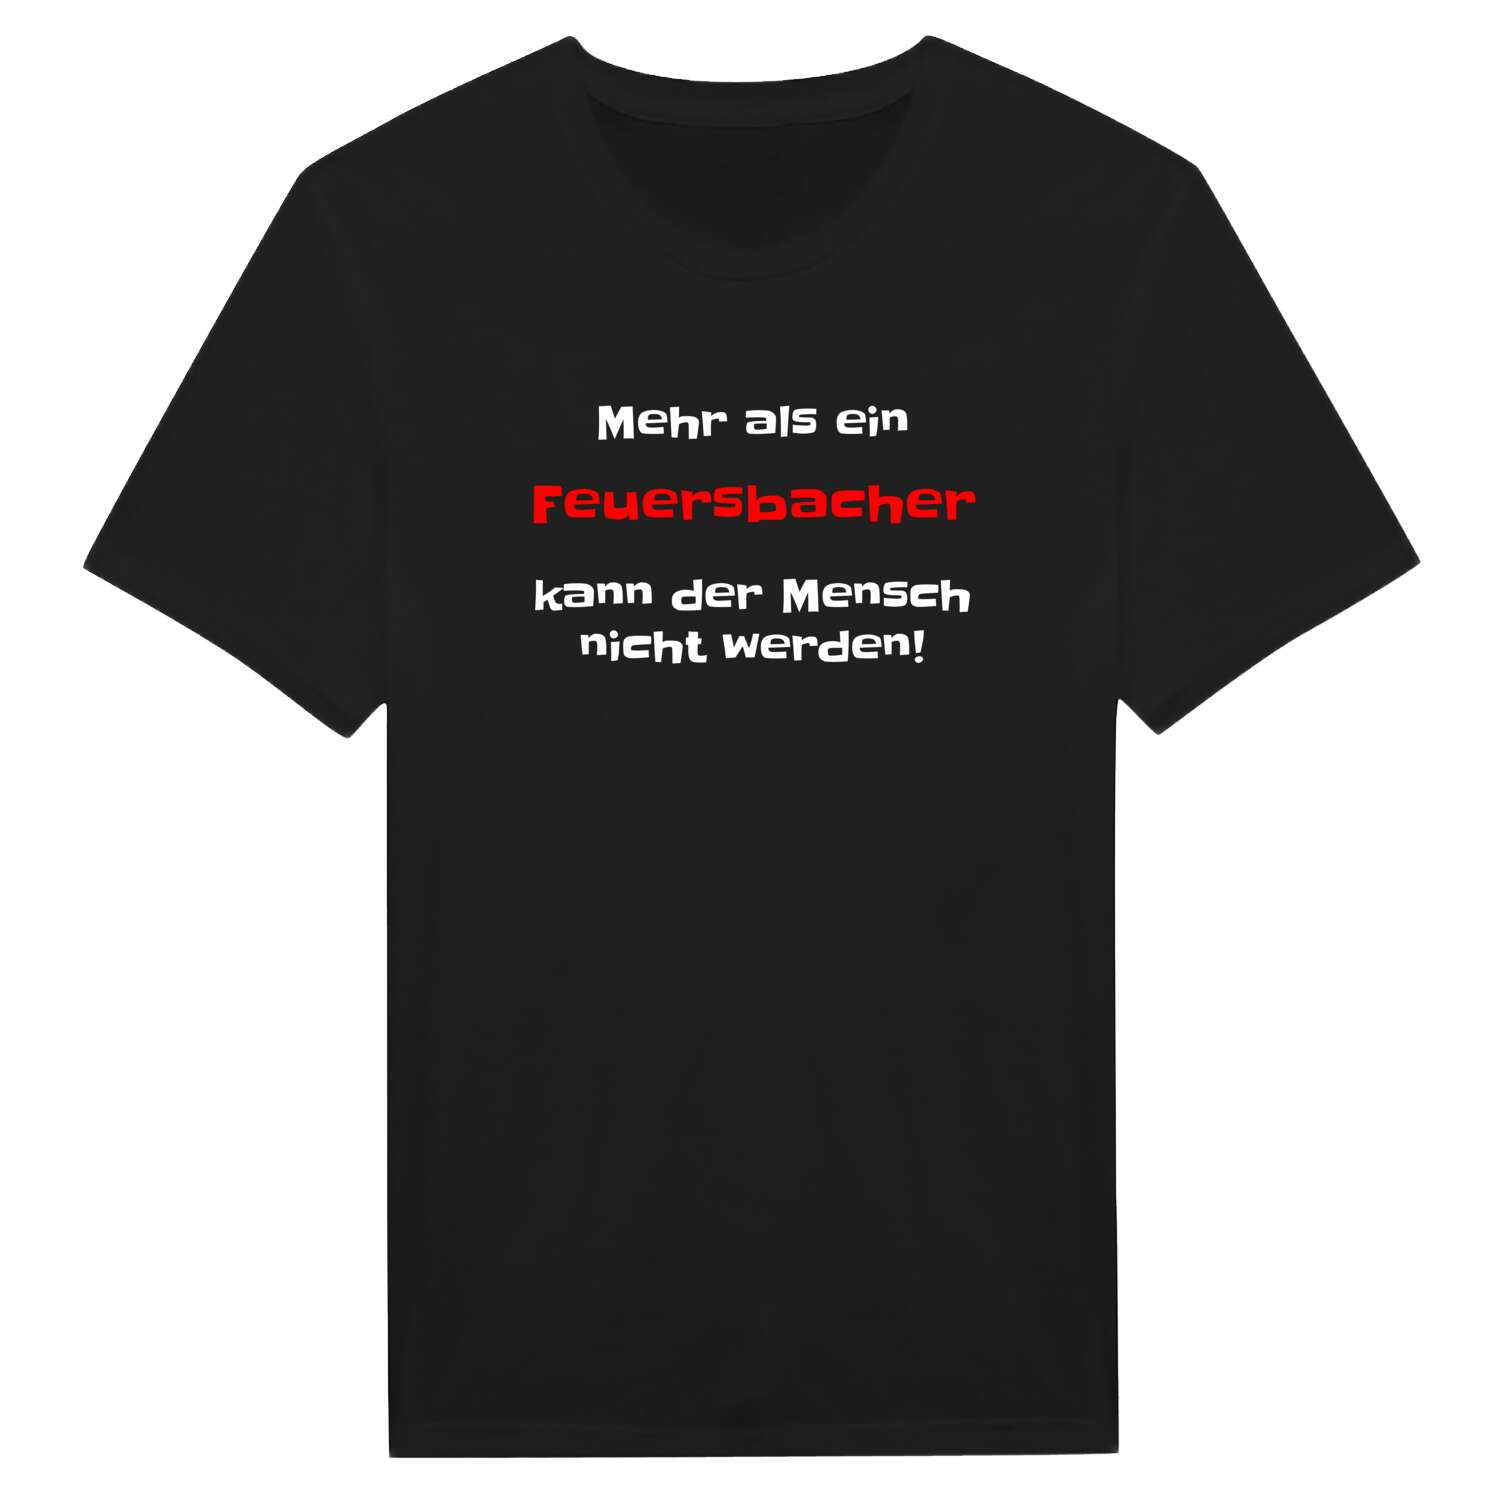 Feuersbach T-Shirt »Mehr als ein«